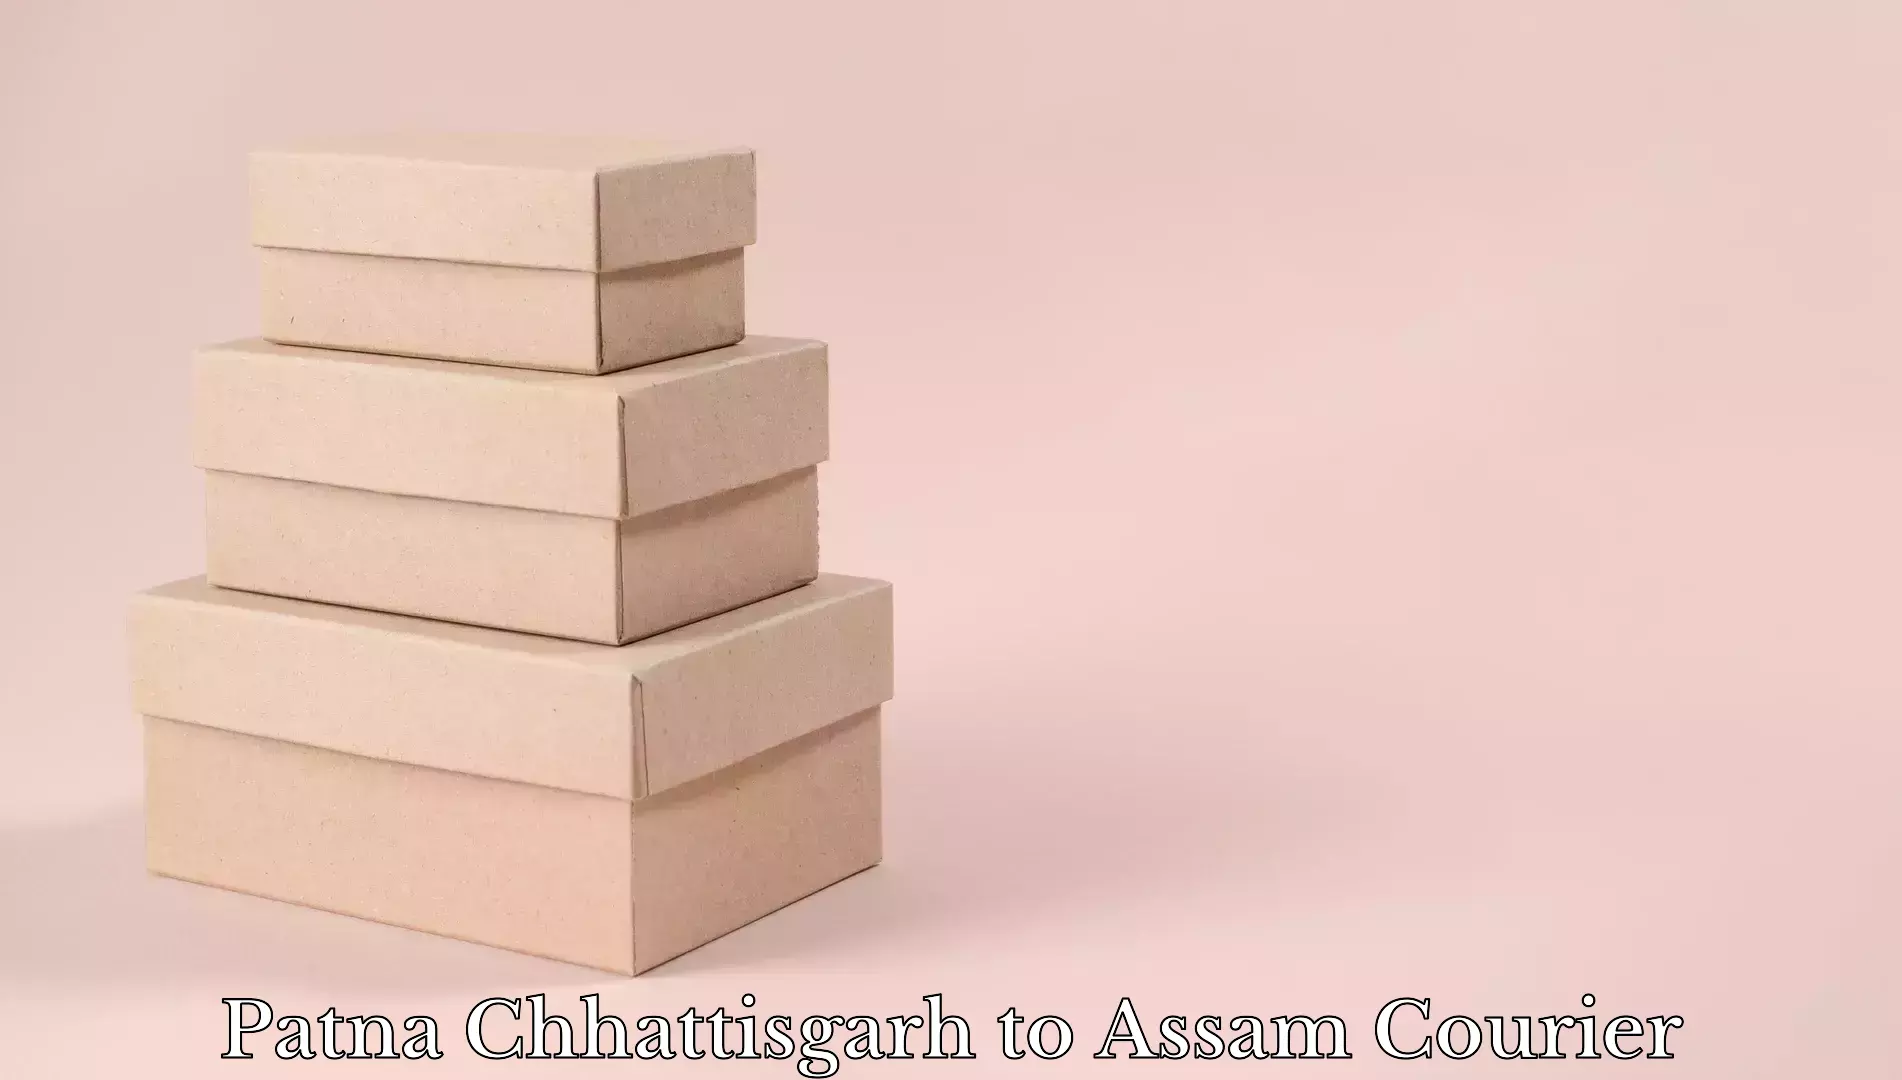 Personal effects shipping Patna Chhattisgarh to Amoni